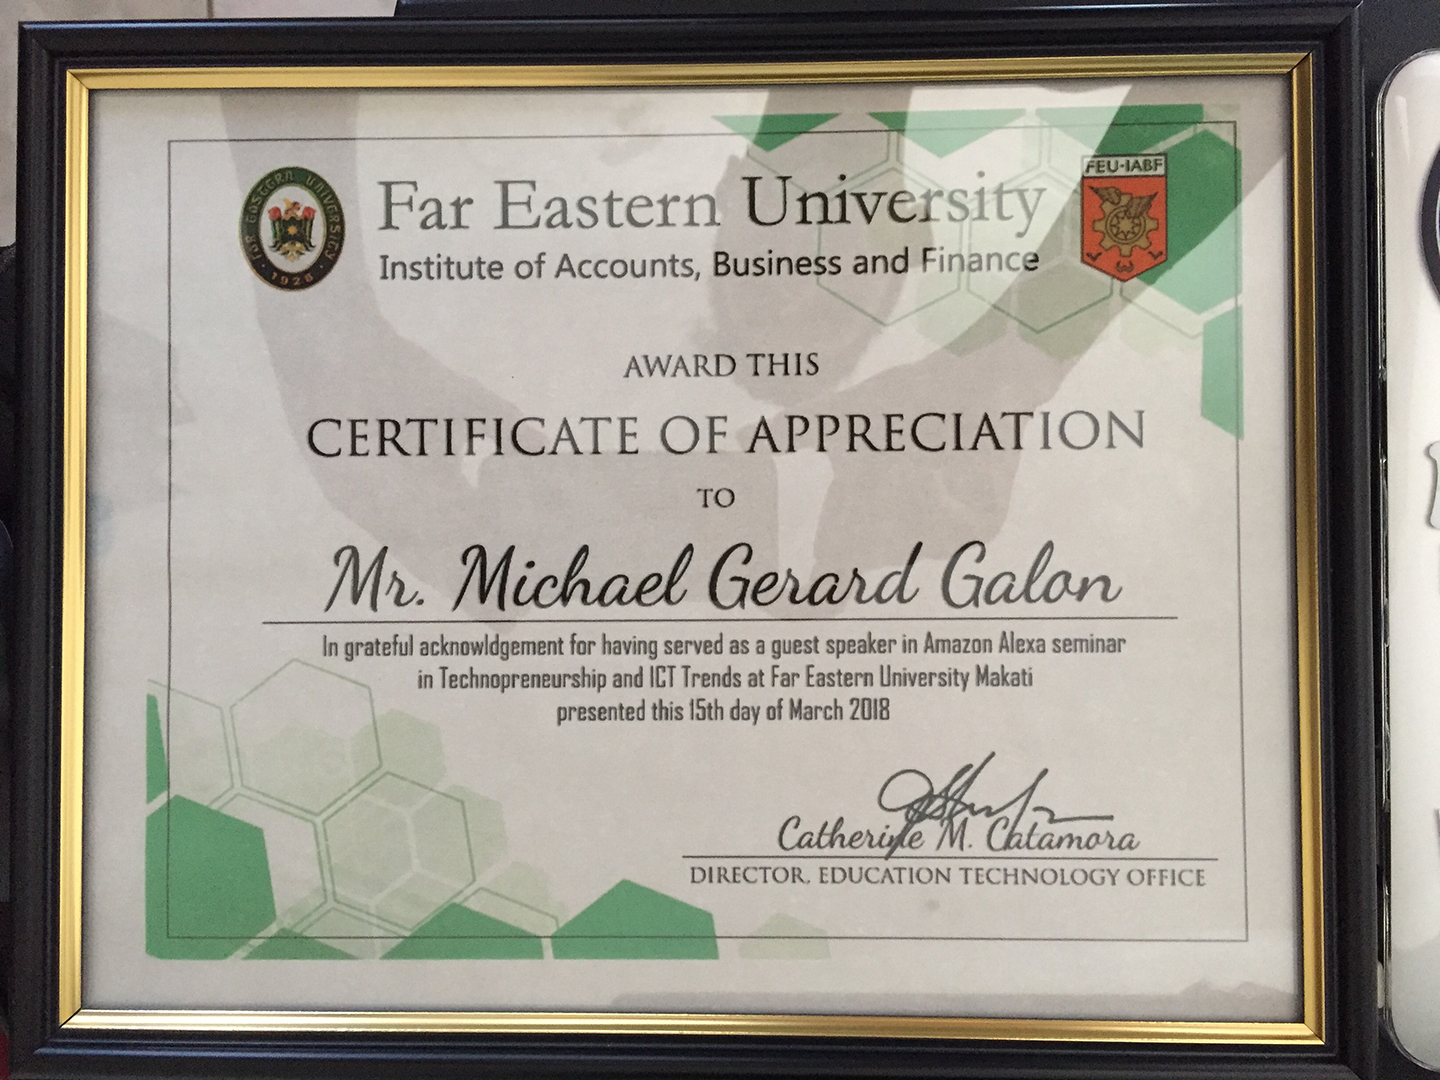 FEU Makati Certificate